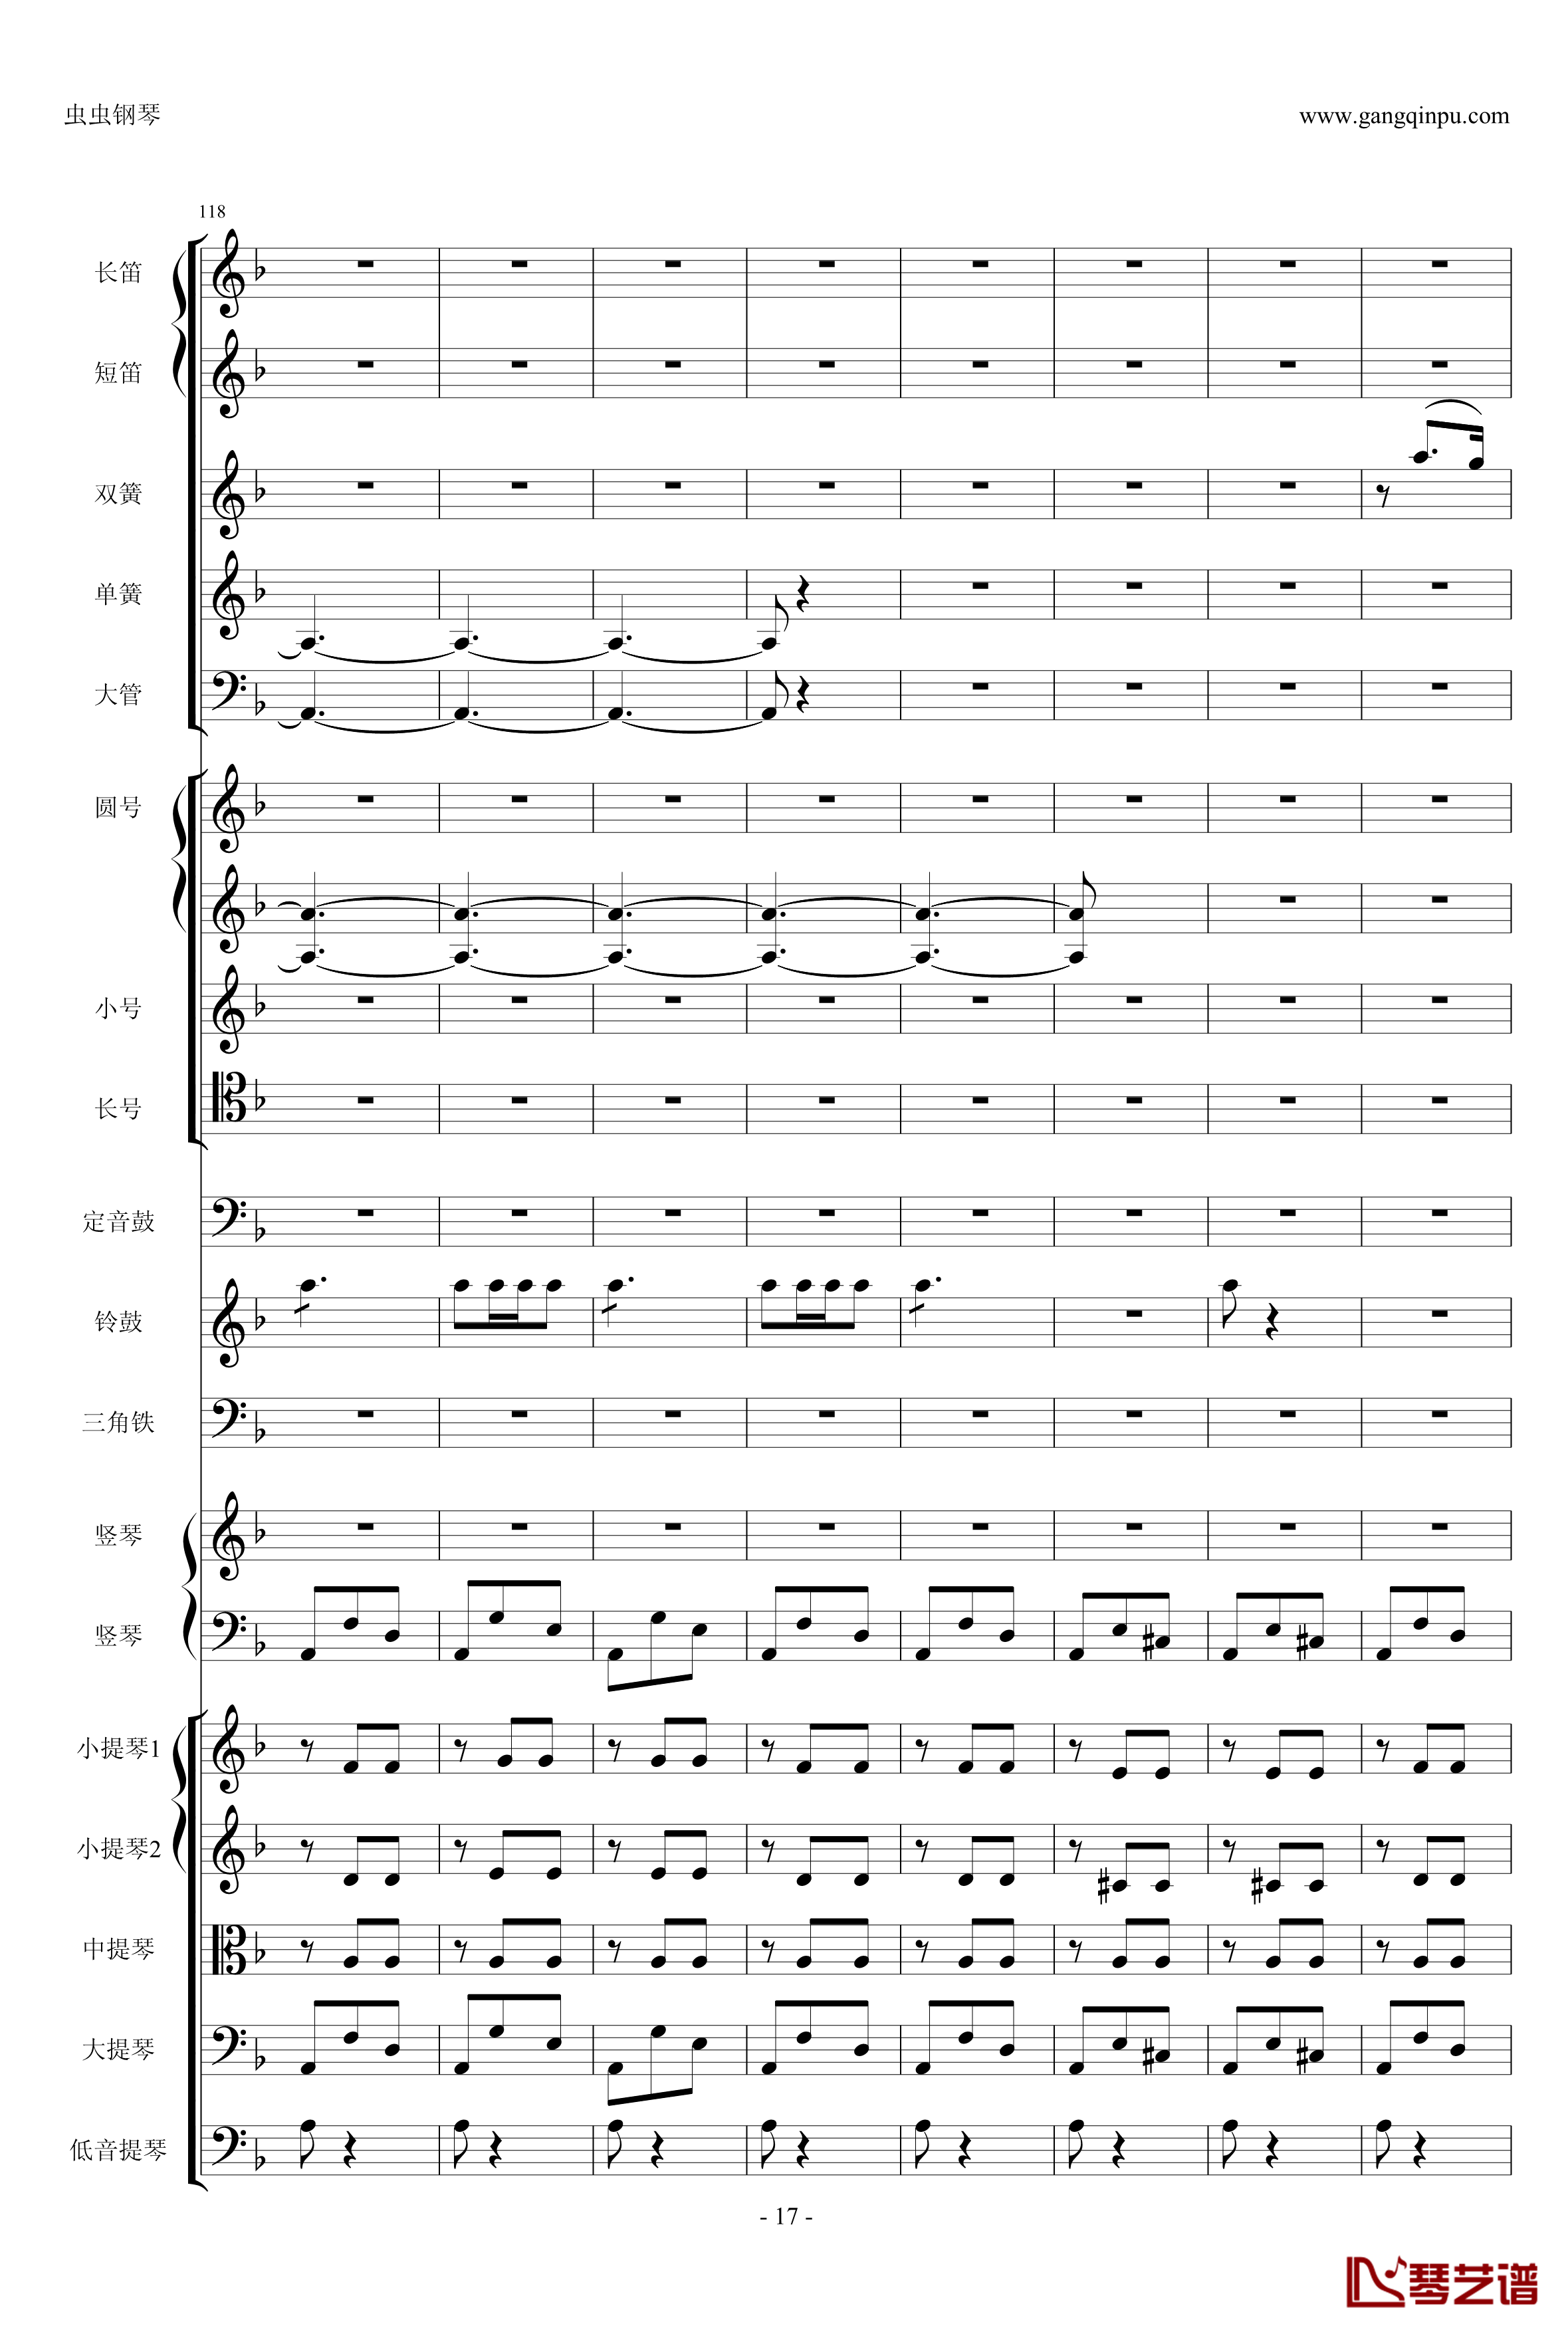 歌剧卡门选段钢琴谱-比才-Bizet- 第四幕间奏曲